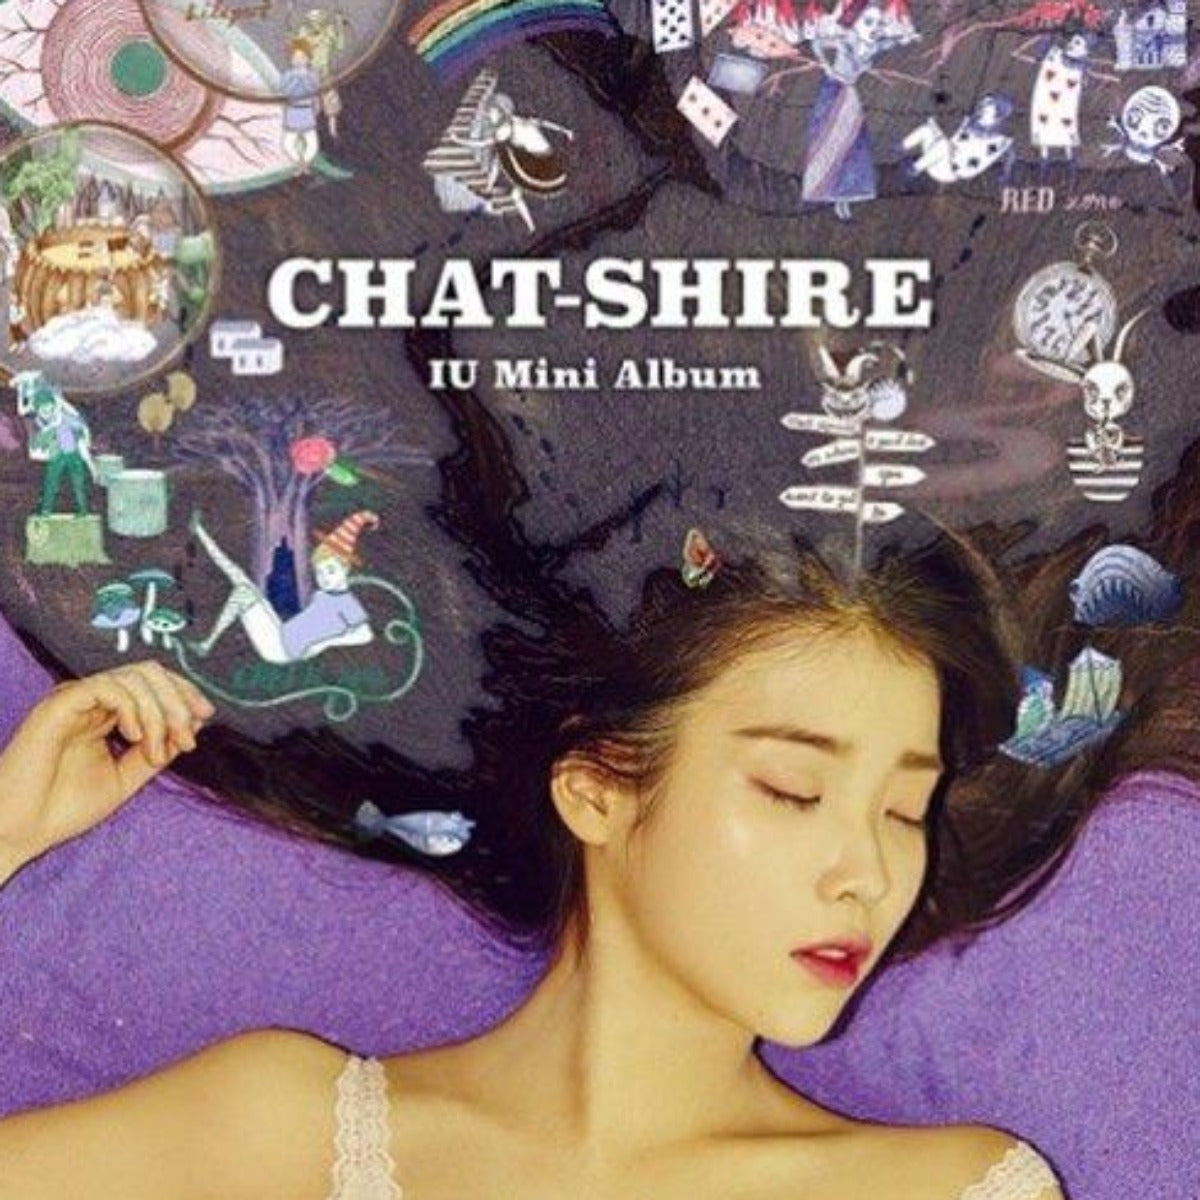 IU Mini Album Vol. 4 - Chat-shire